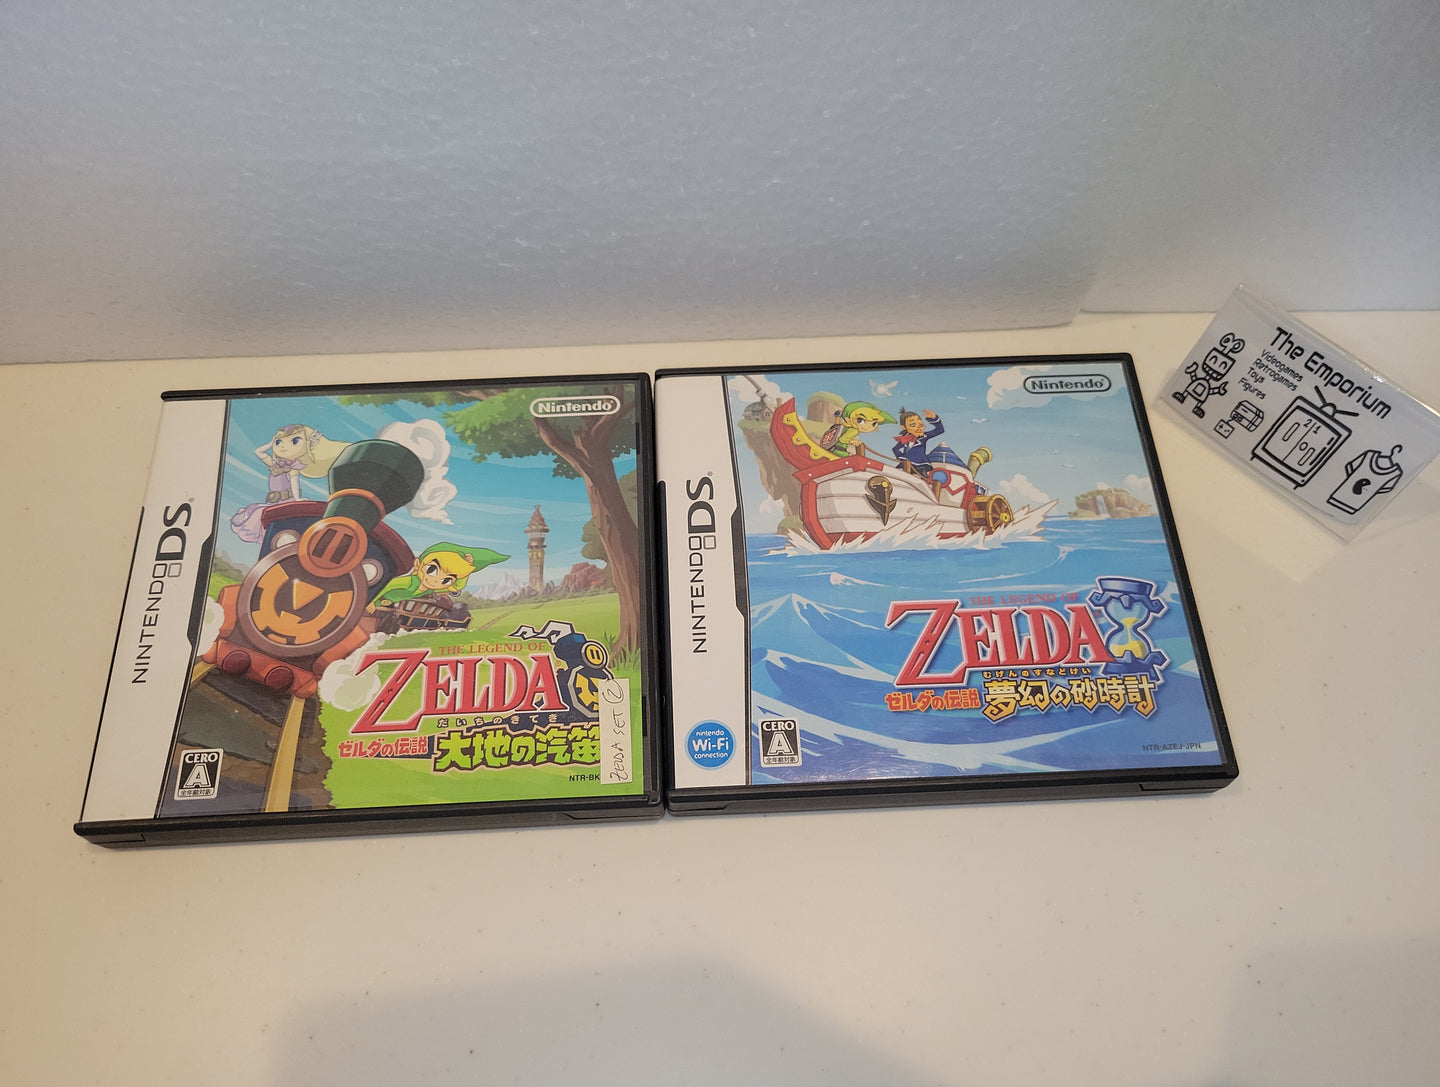 The Legend of Zelda: Phantom Hourglass

+ The Legend of Zelda: Spirit Tracks - Nintendo Ds NDS